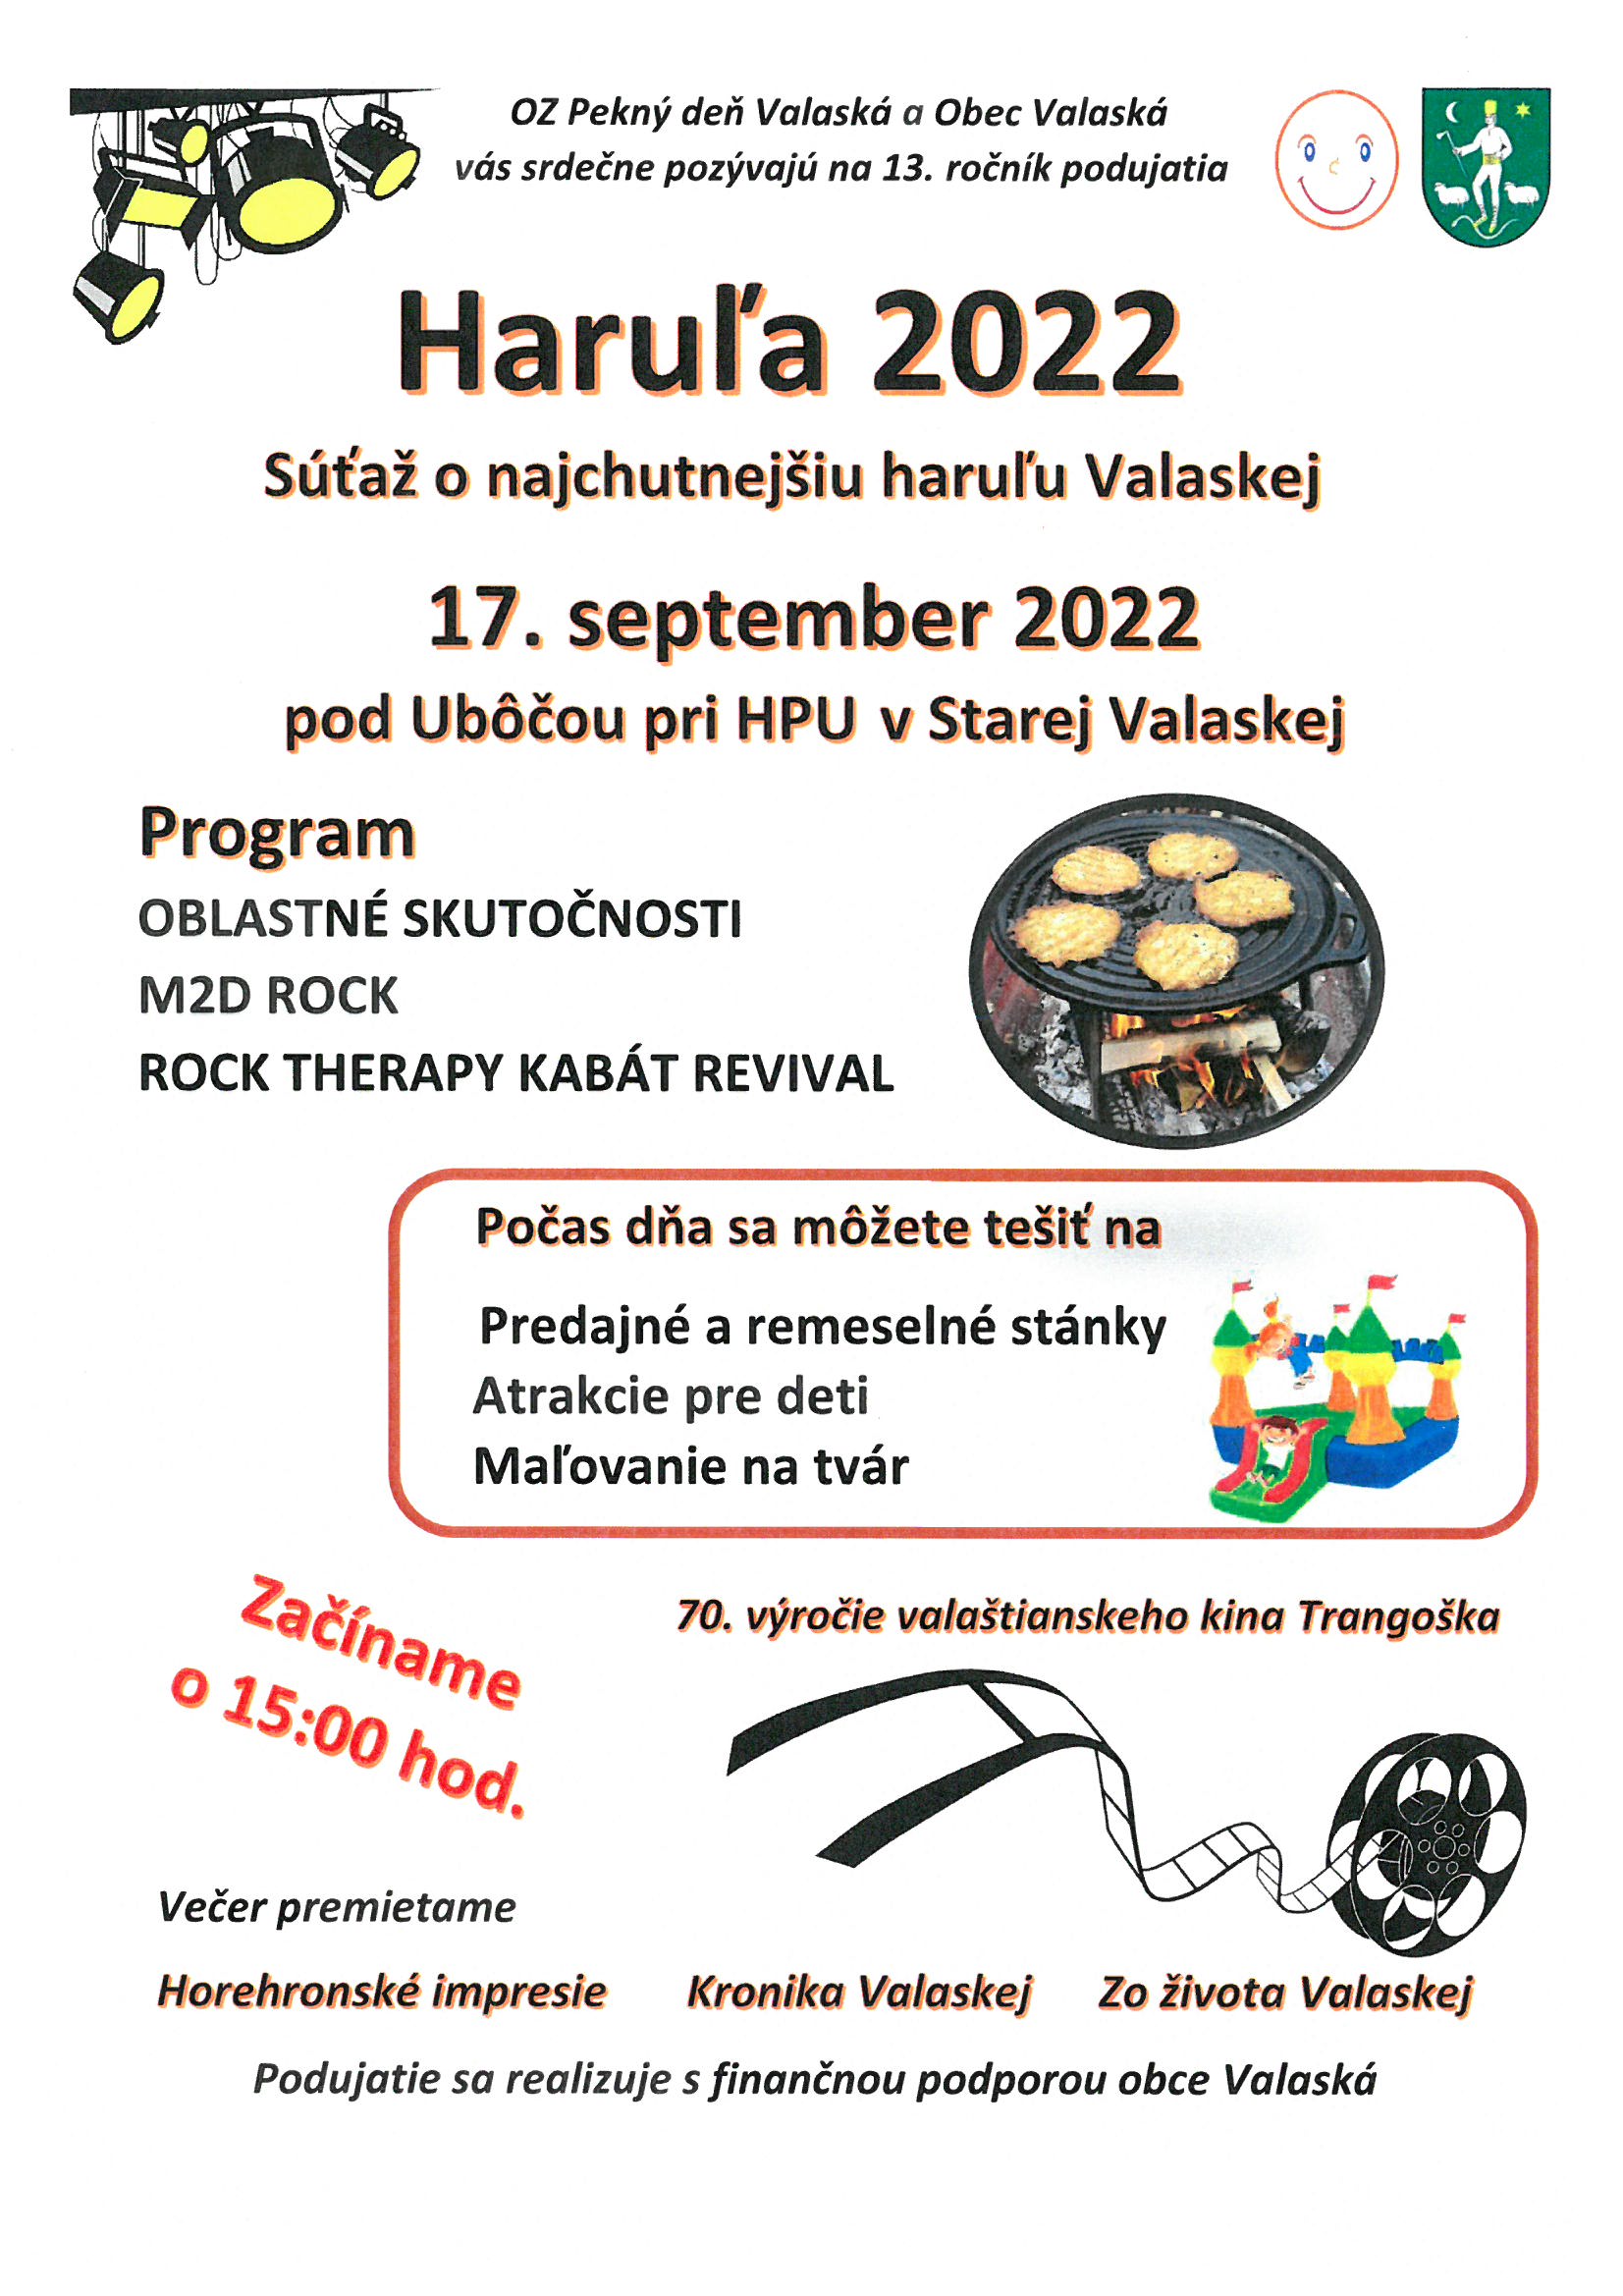 Haruľa 2022 Valaská - 13. ročník súťaže o najchutnejšiu haruľu Valaskej